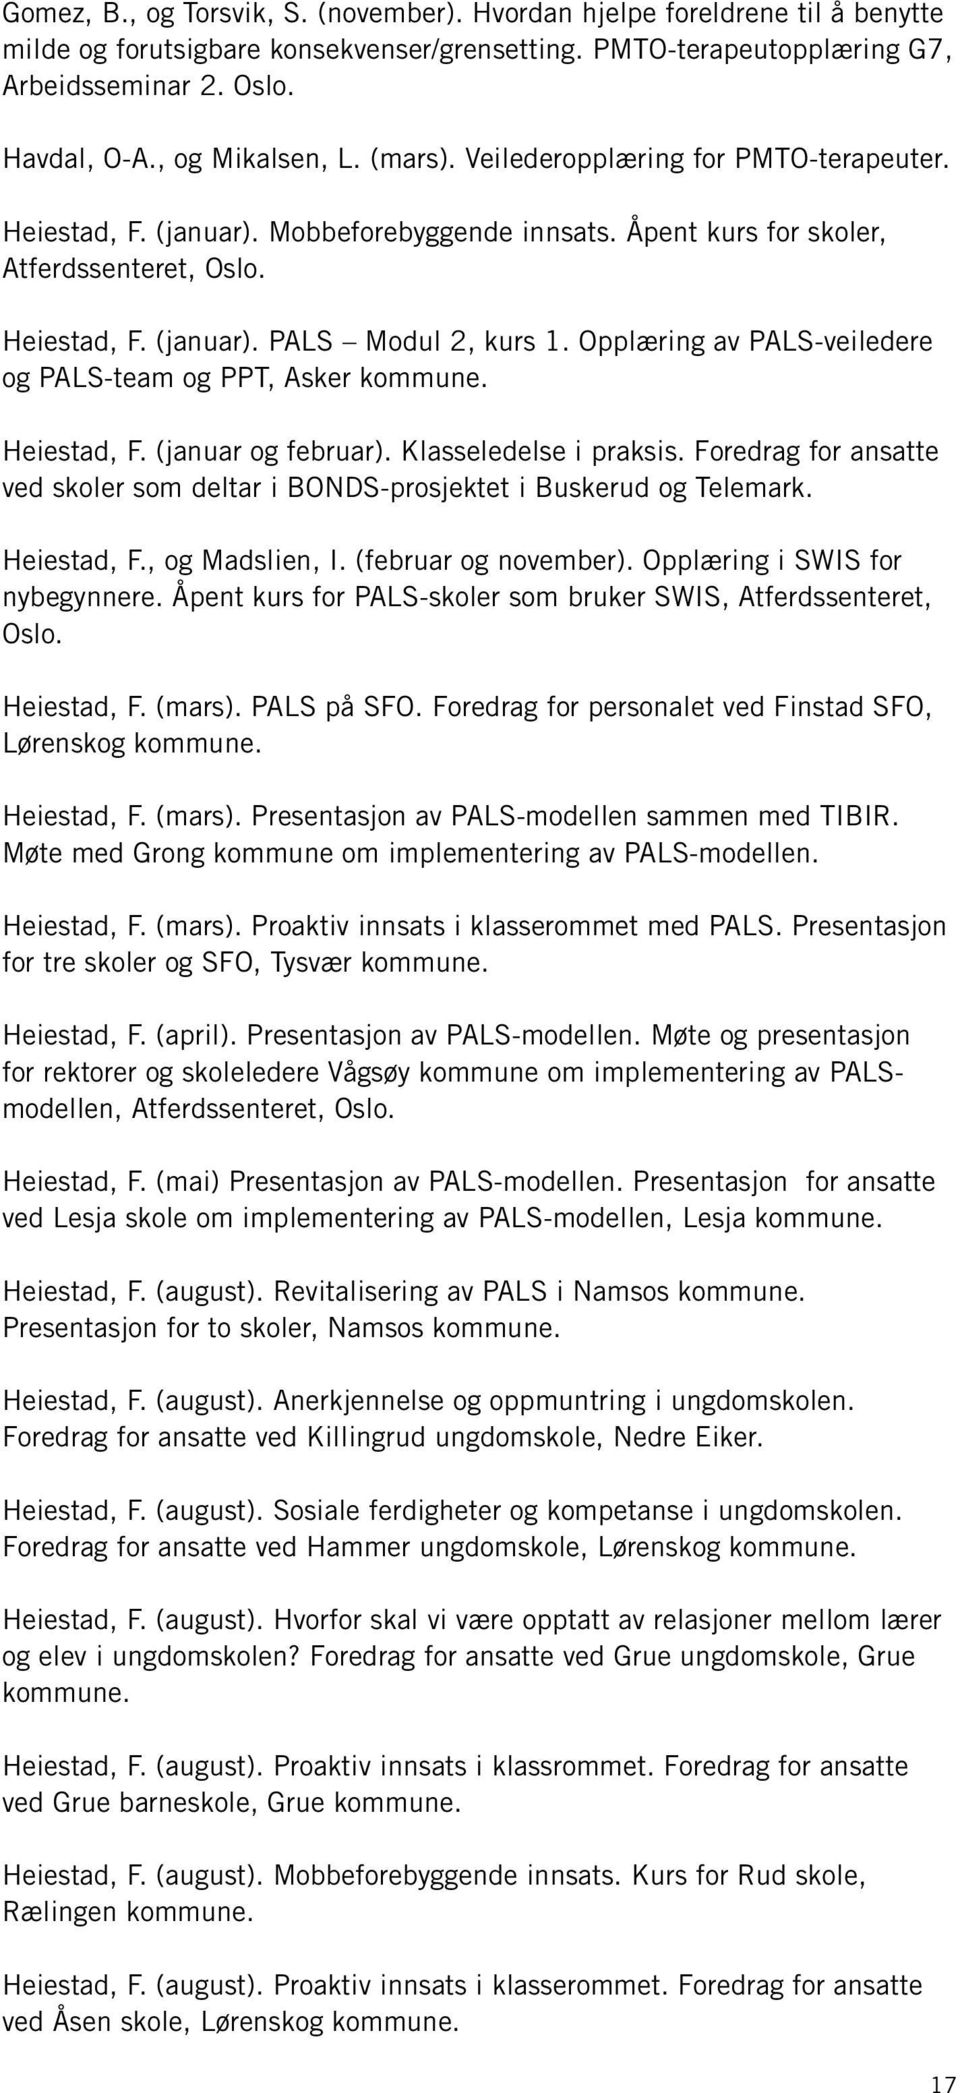 Opplæring av PALS-veiledere og PALS-team og PPT, Asker kommune. Heiestad, F. (januar og februar). Klasseledelse i praksis.